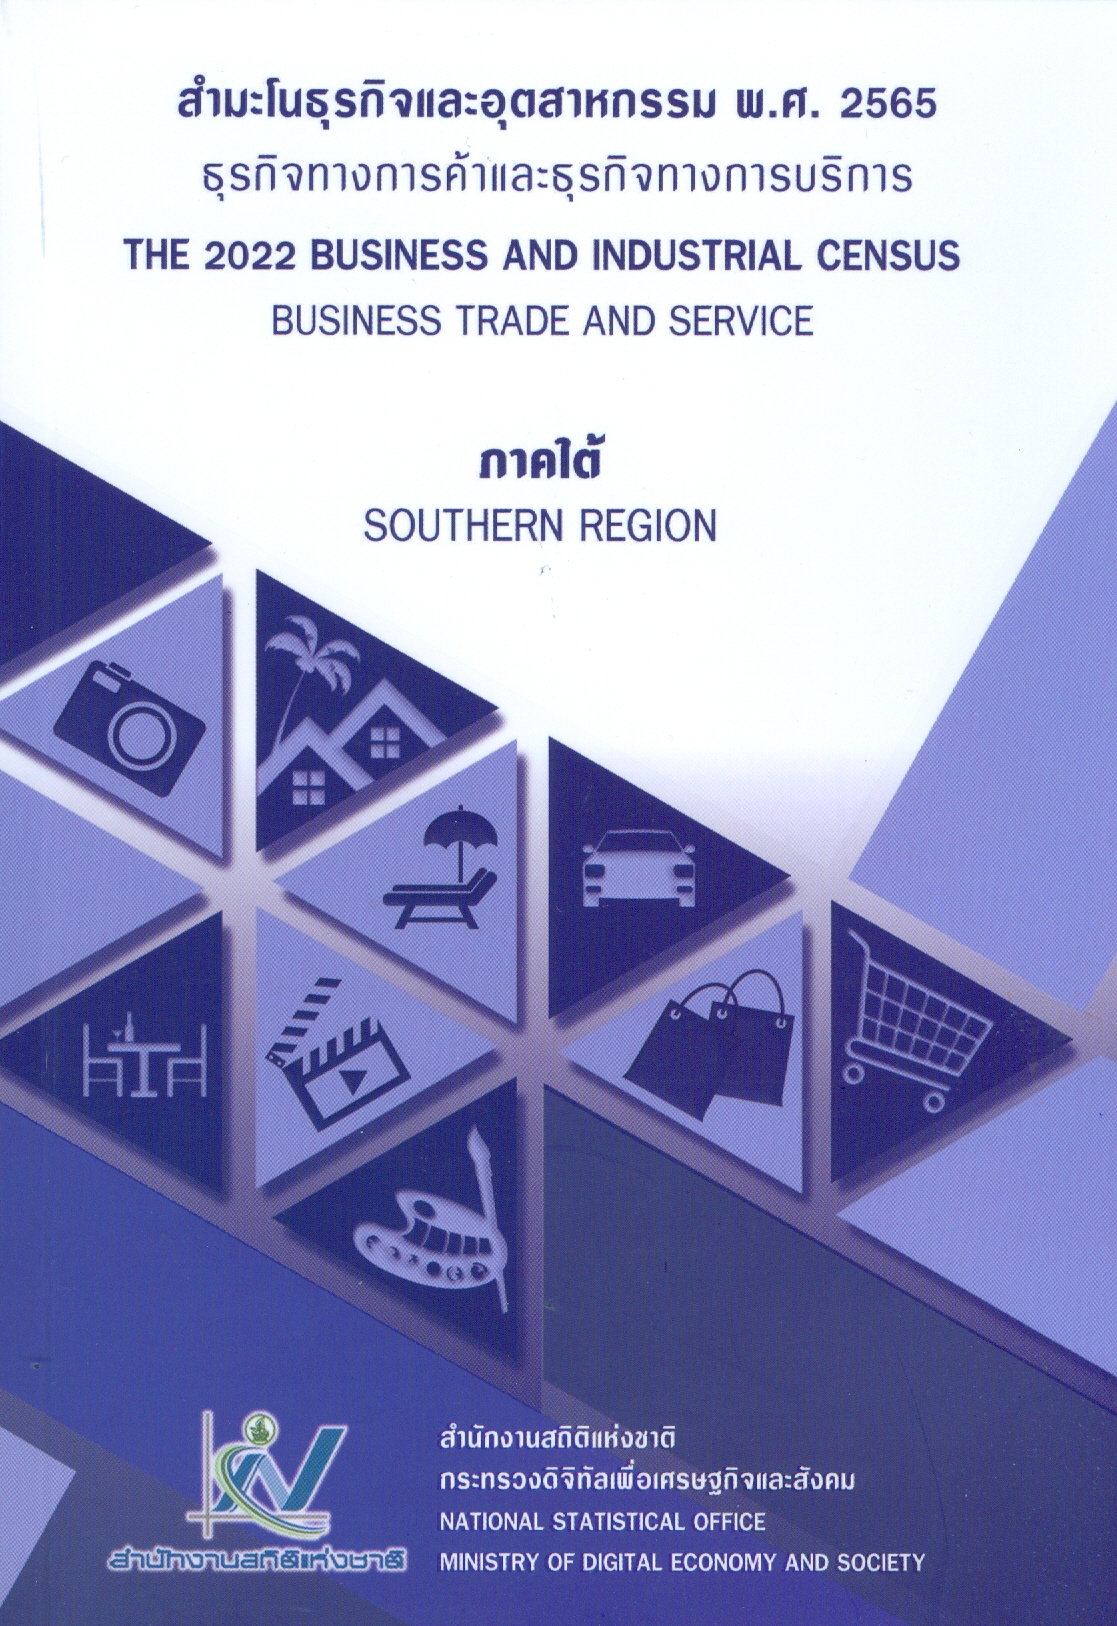 สำมะโนธุรกิจและอุตสาหกรรม : ธุรกิจทางการค้าและธุรกิจทางการบริการ พ.ศ. 2565  ภาคใต้